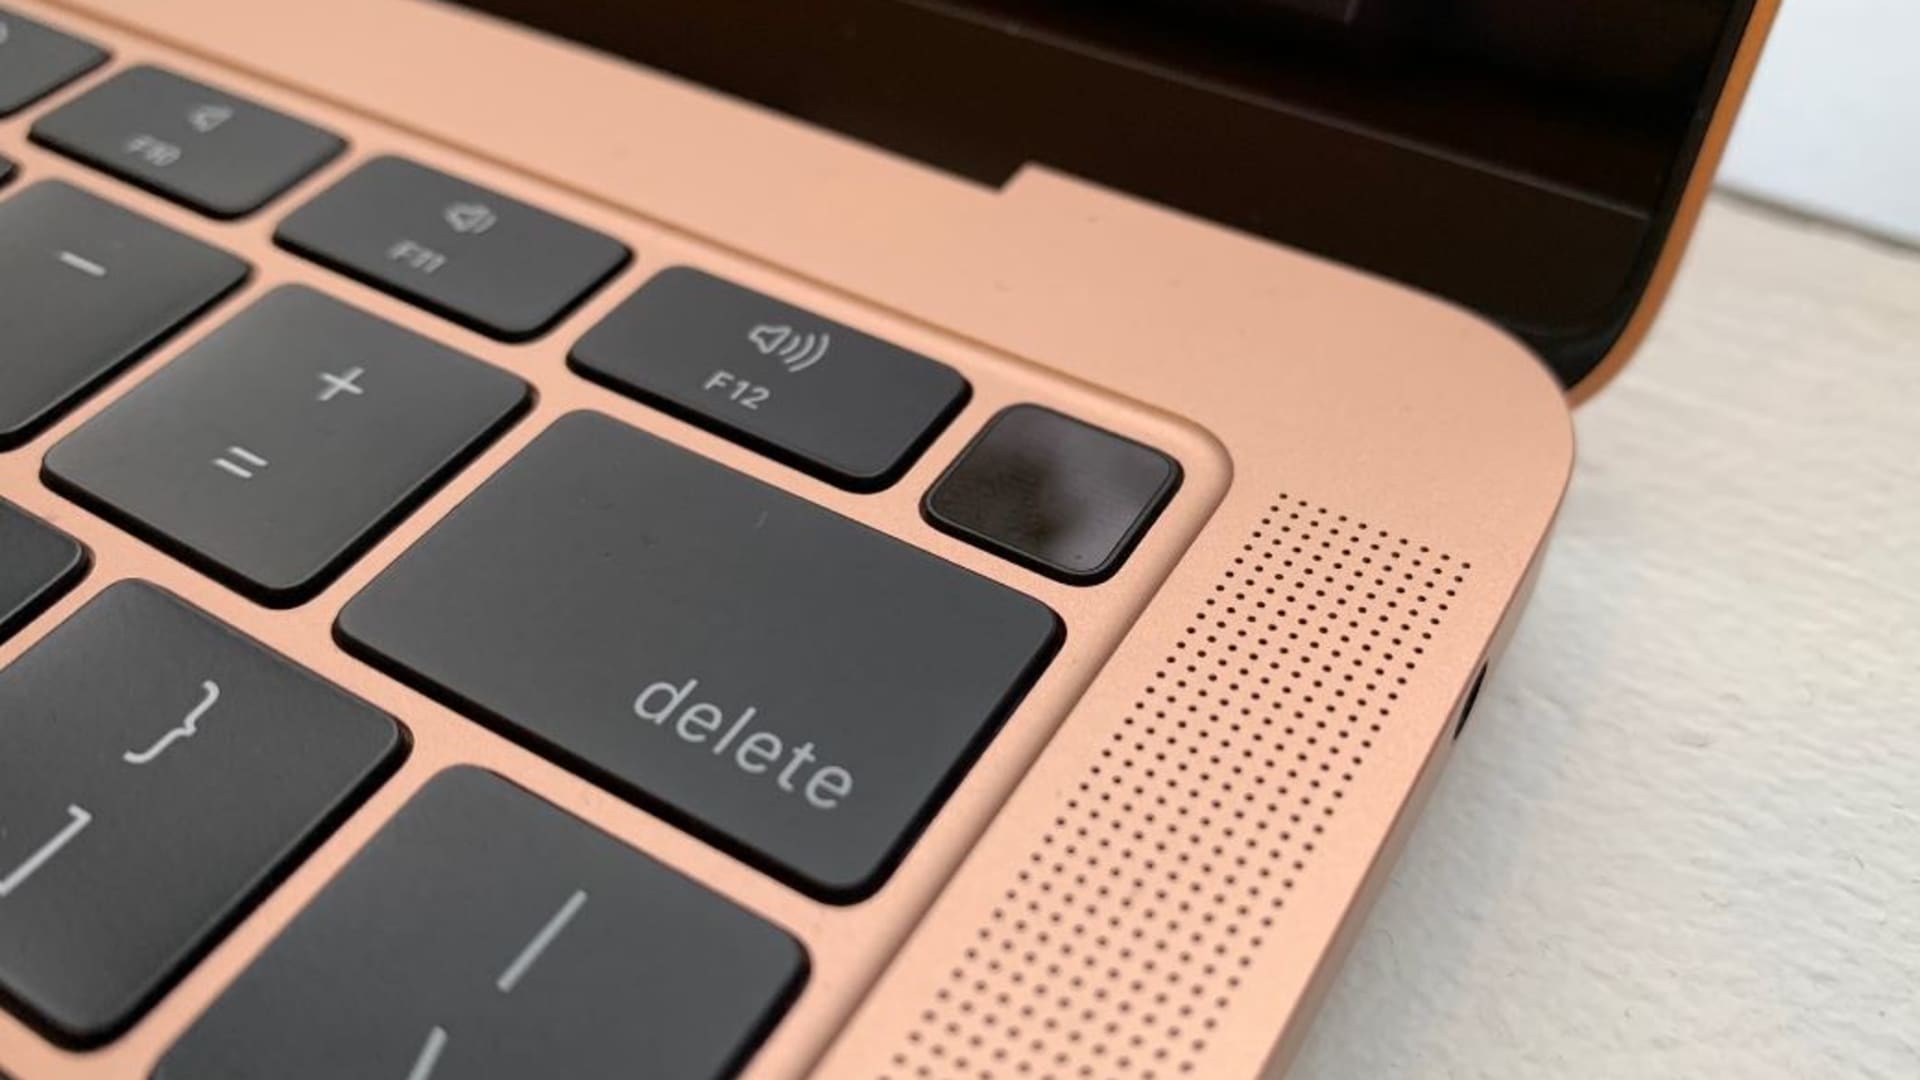 Apagar macbook con teclado